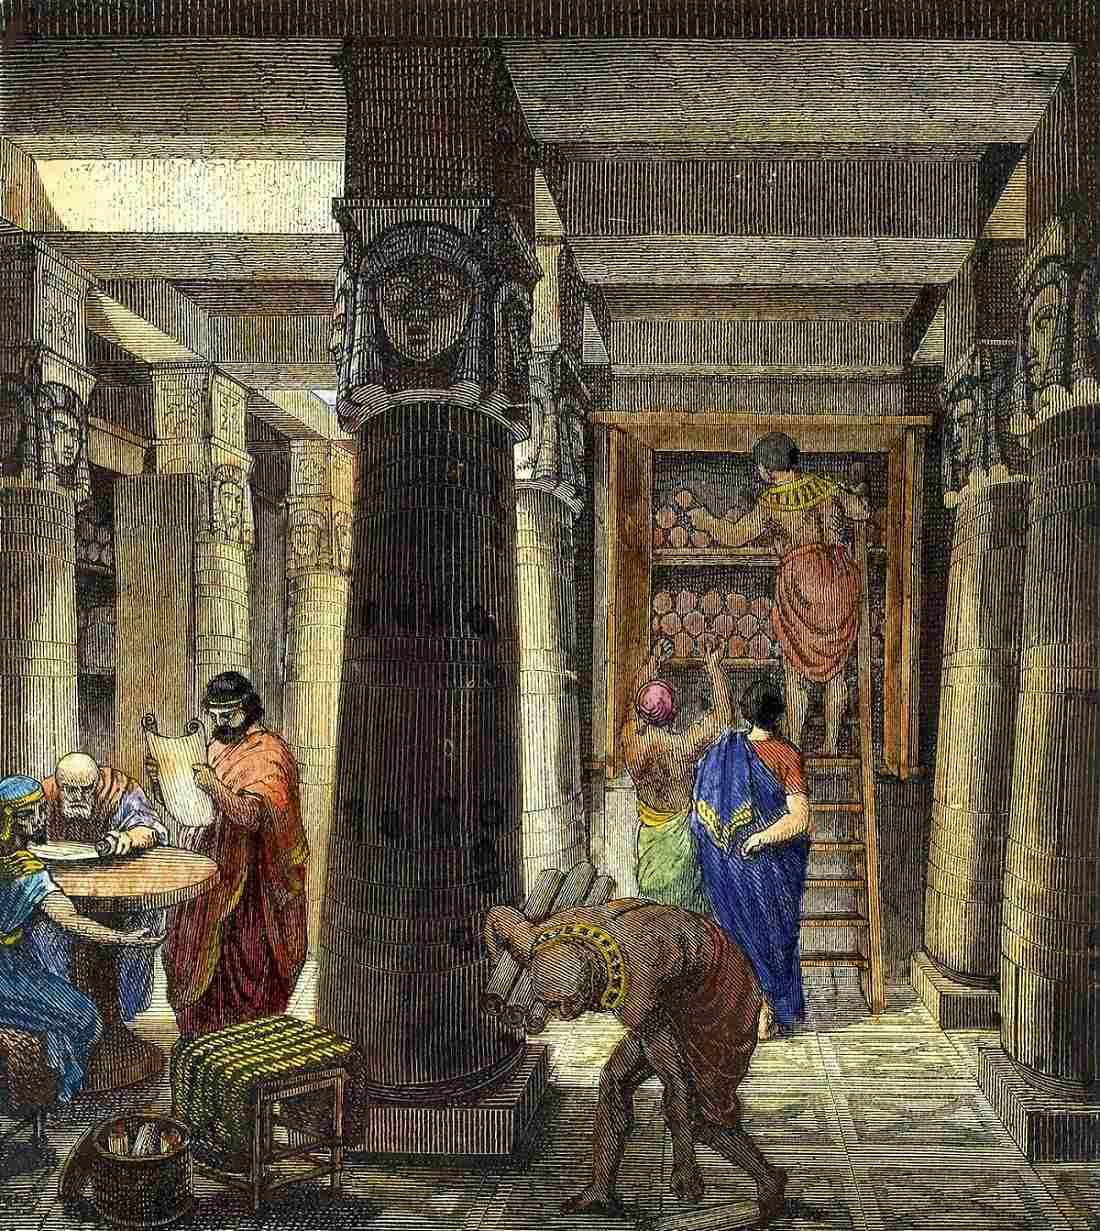 아슈르바니팔 도서관: 알렉산드리아 도서관 1에 영감을 준 가장 오래된 도서관